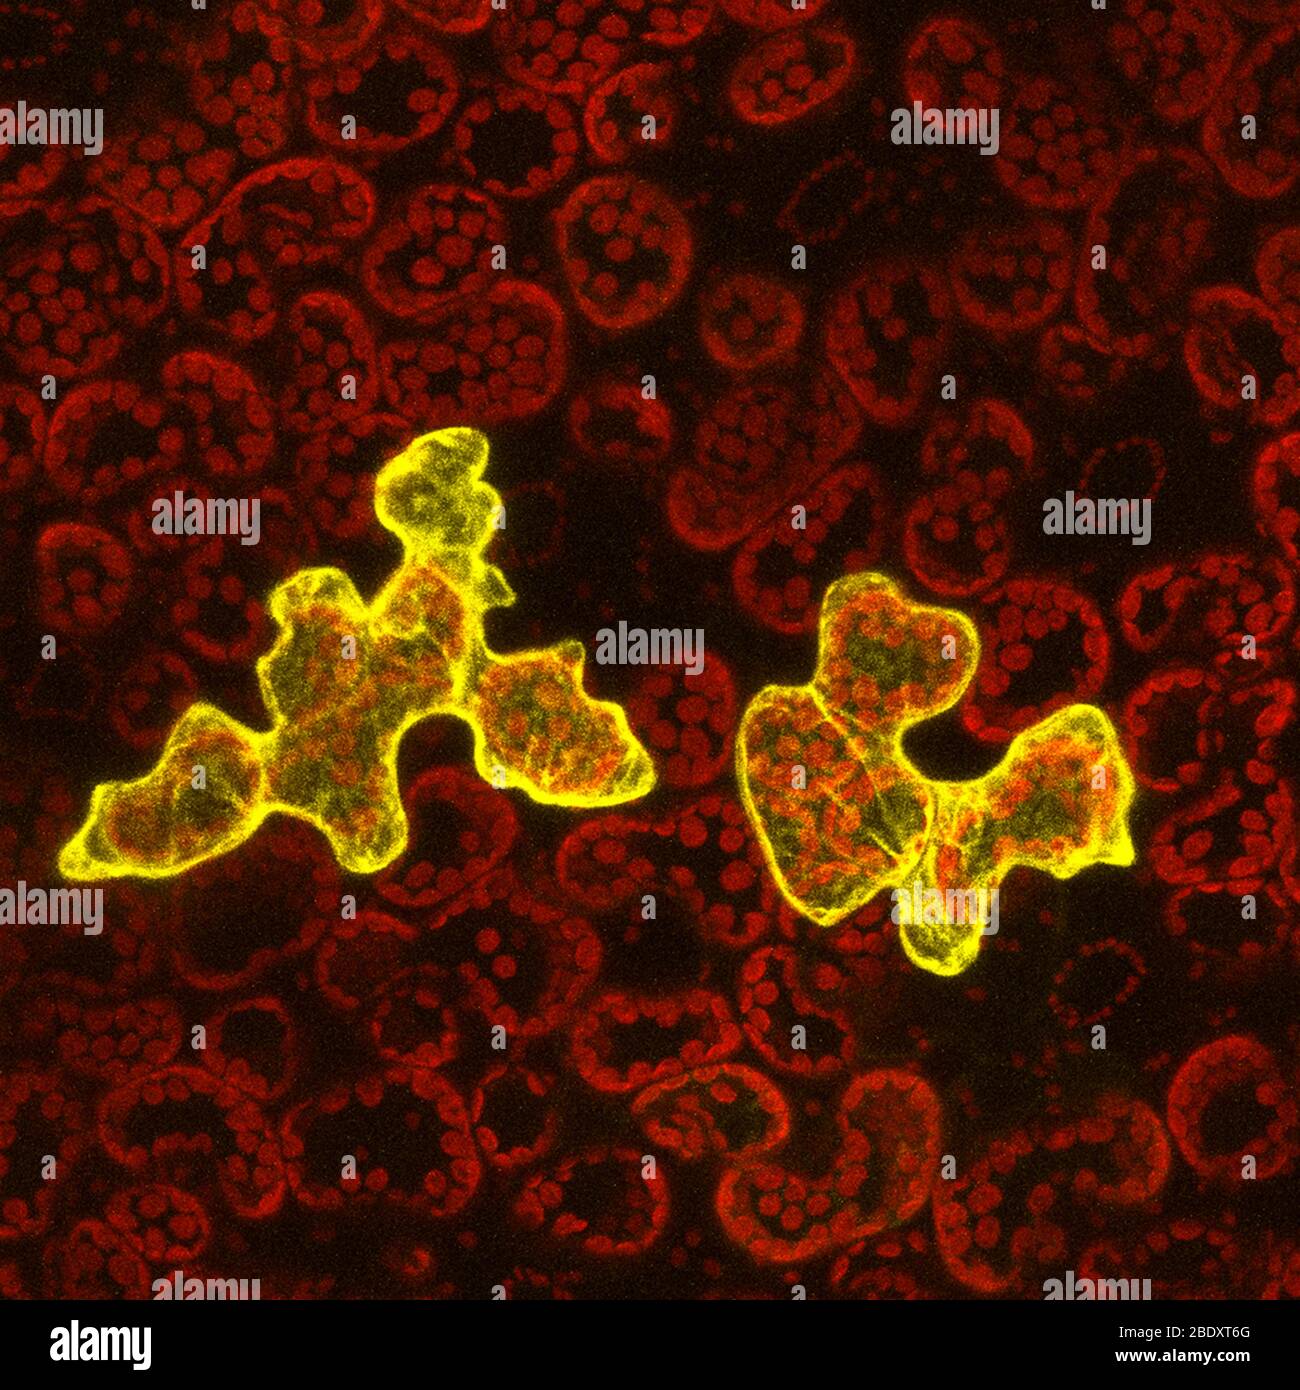 Cellule epidermiche vegetali con infezione virale, micrografia confocale Foto Stock